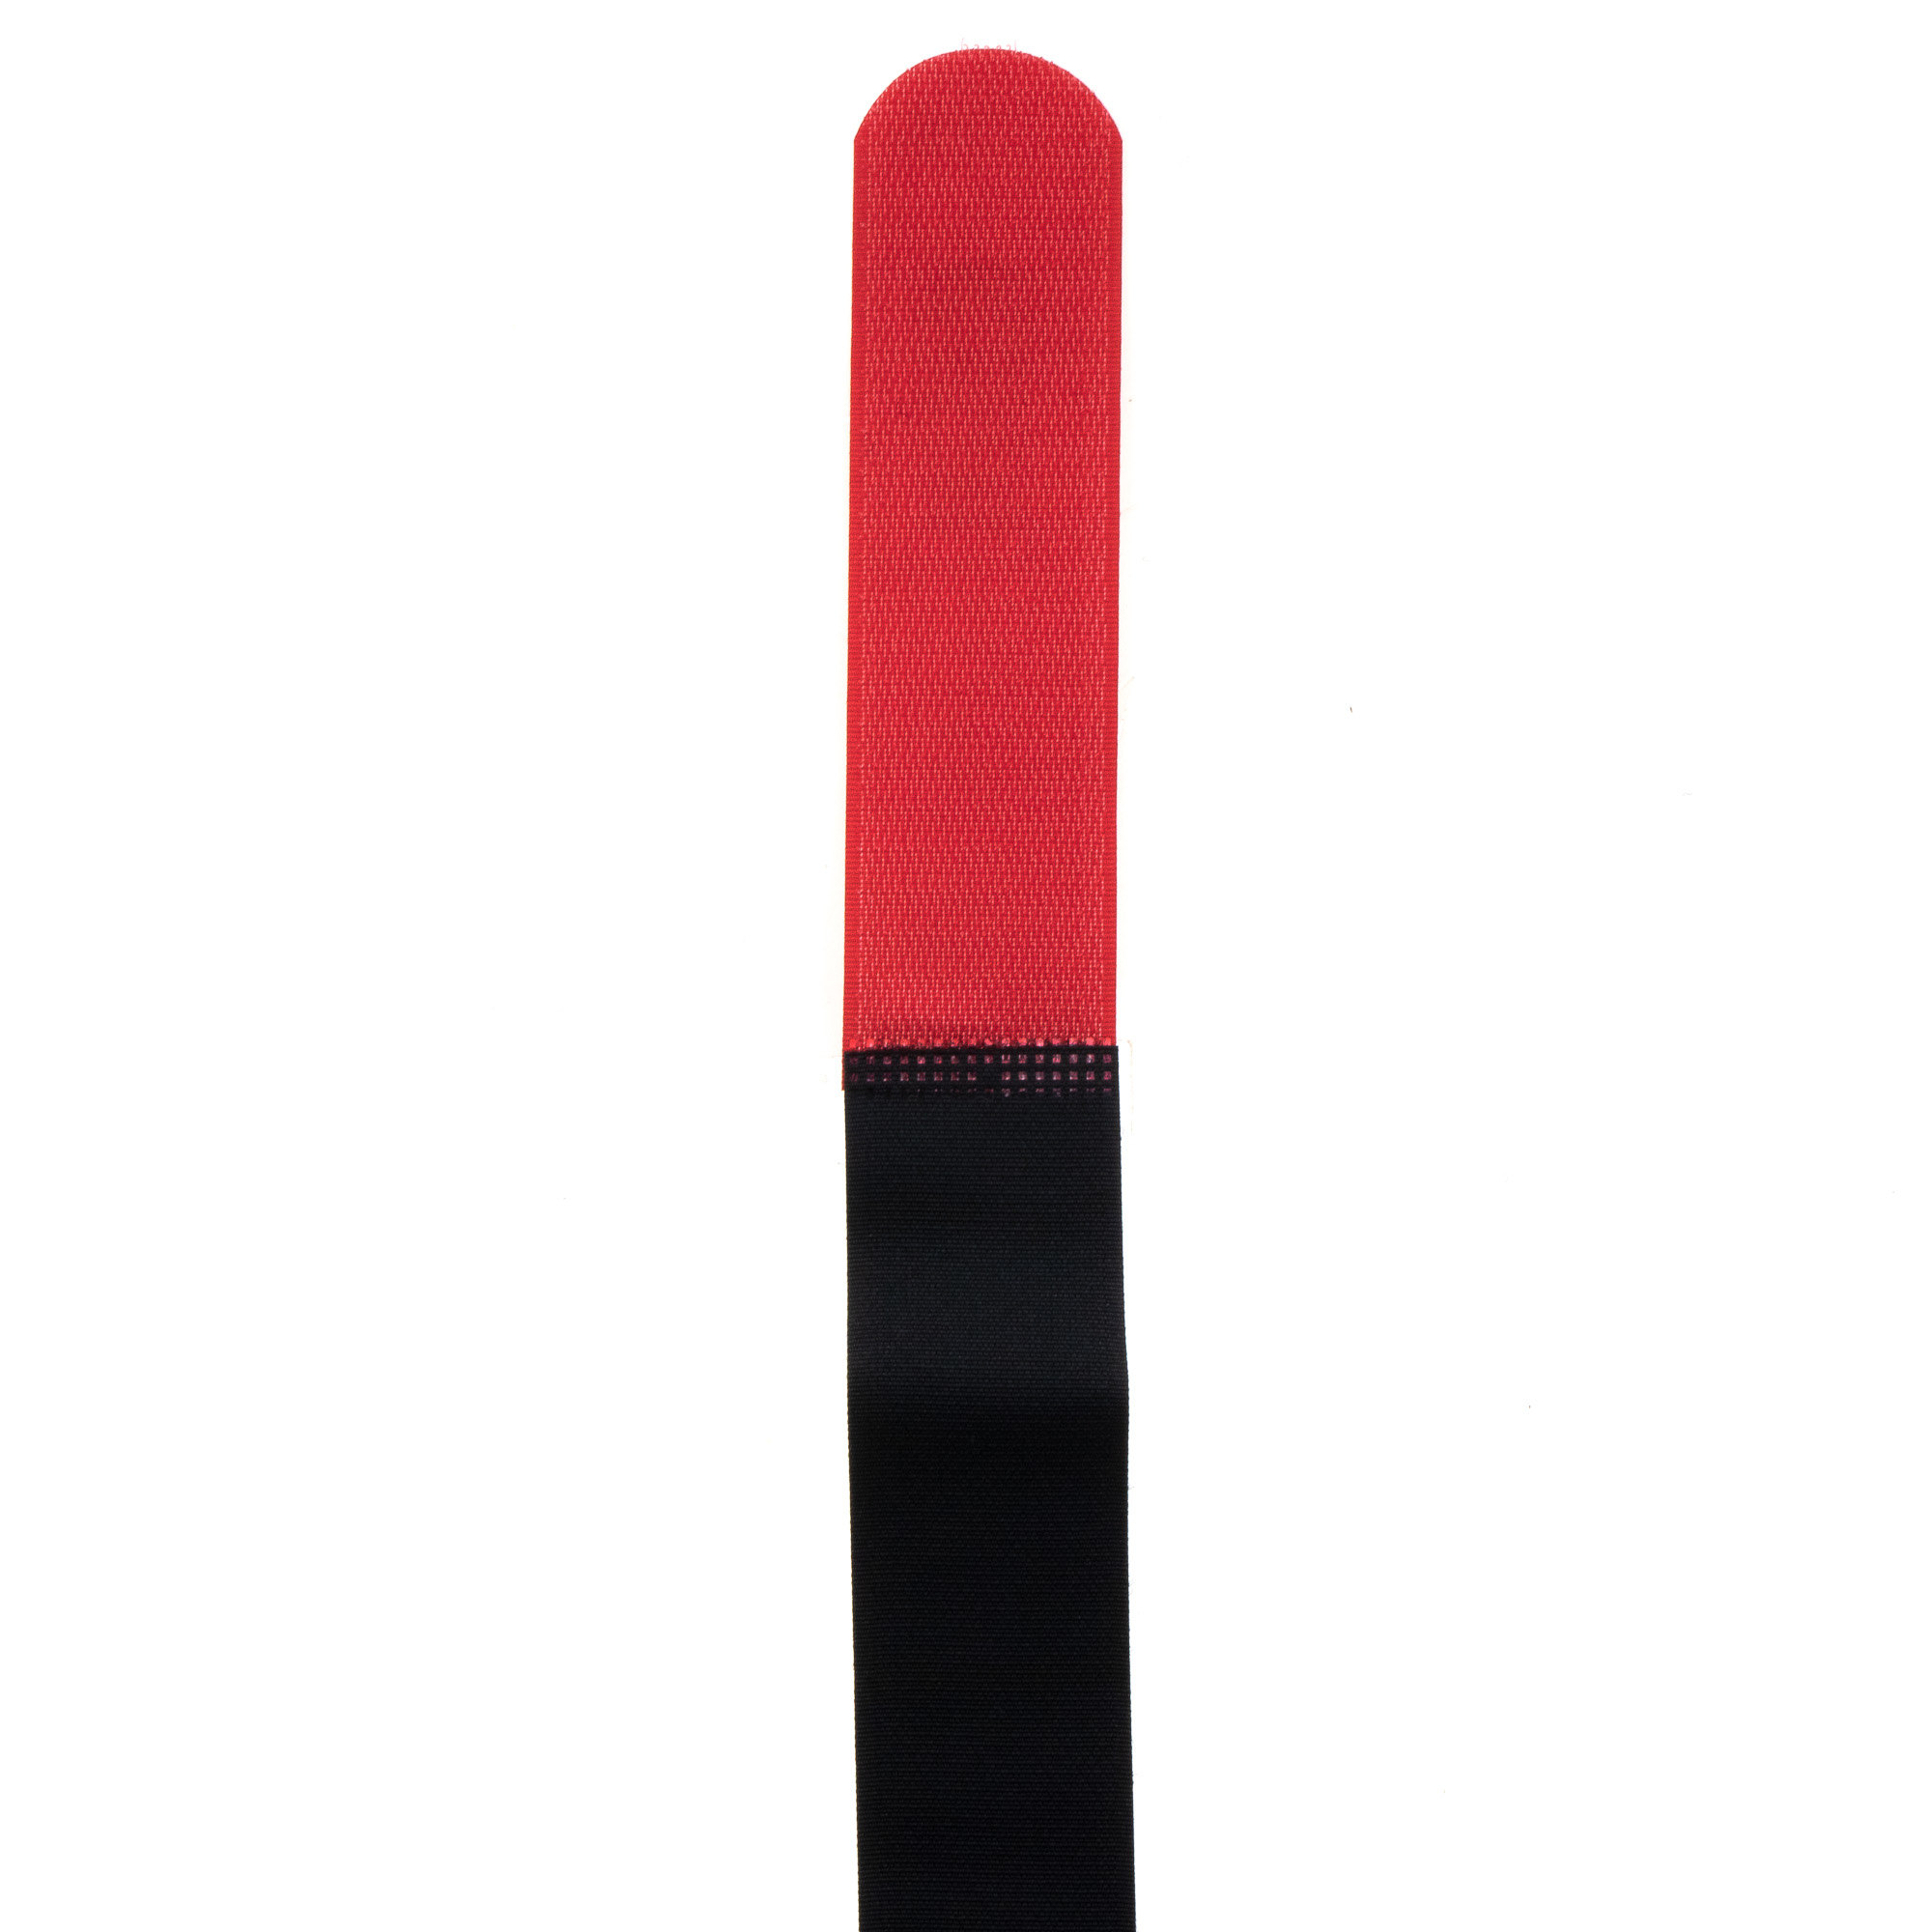 Hook-and-loop strap 600x38, black/red, crossed, 10PCS